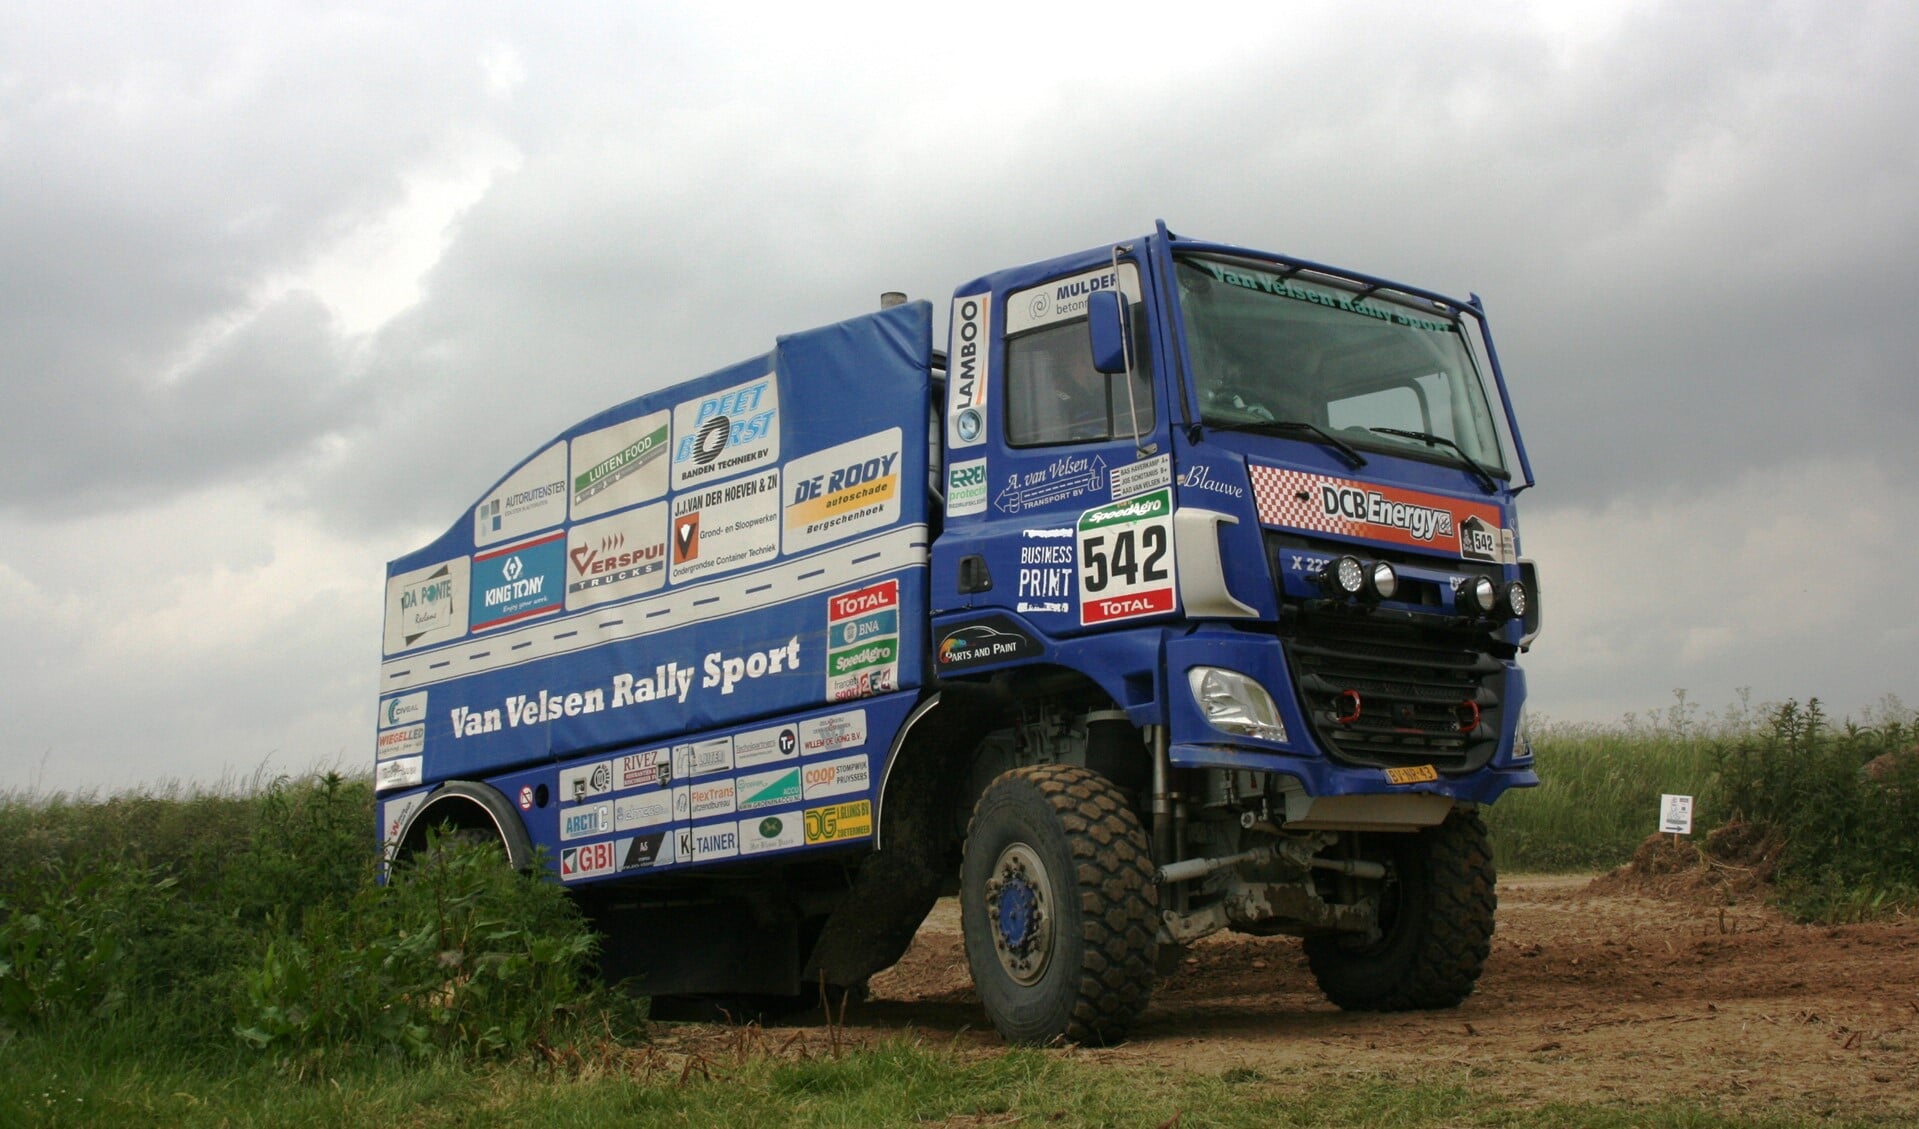 De Stompwijkse racetruck ('het blauwe schatje') tijdens de Dutch Dakar Experience 2016 in Maurik (foto: Van Velsen Rally Sport).